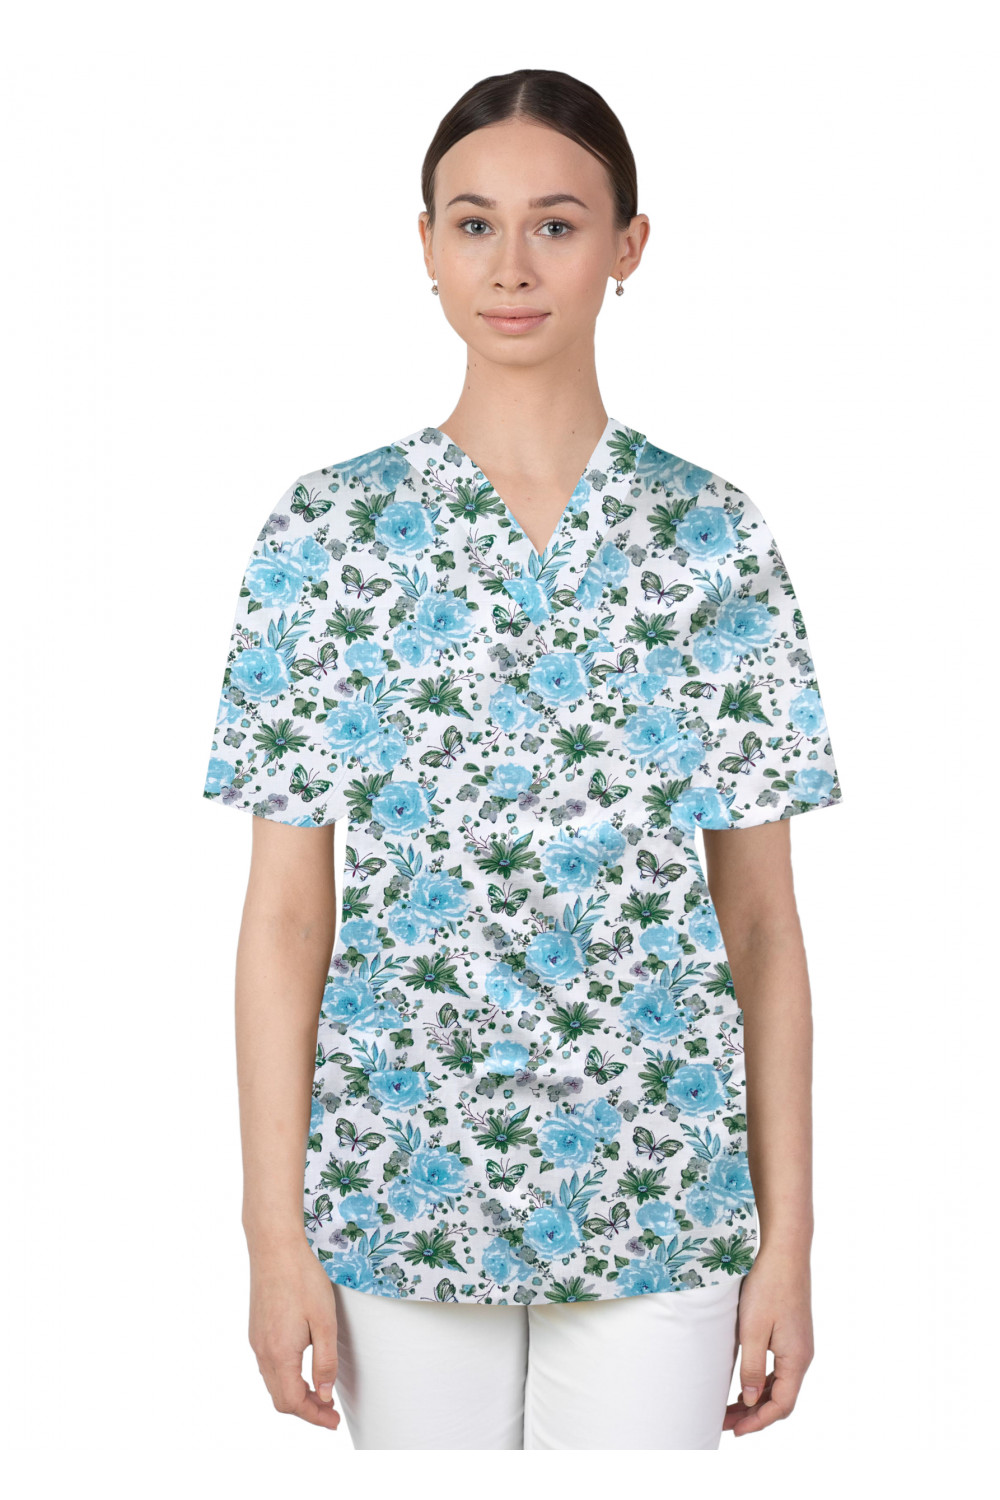 Bluza medyczna we wzorki kolorowa damska M-074G kwiatki z motylkami błękitno zielone na białym tle